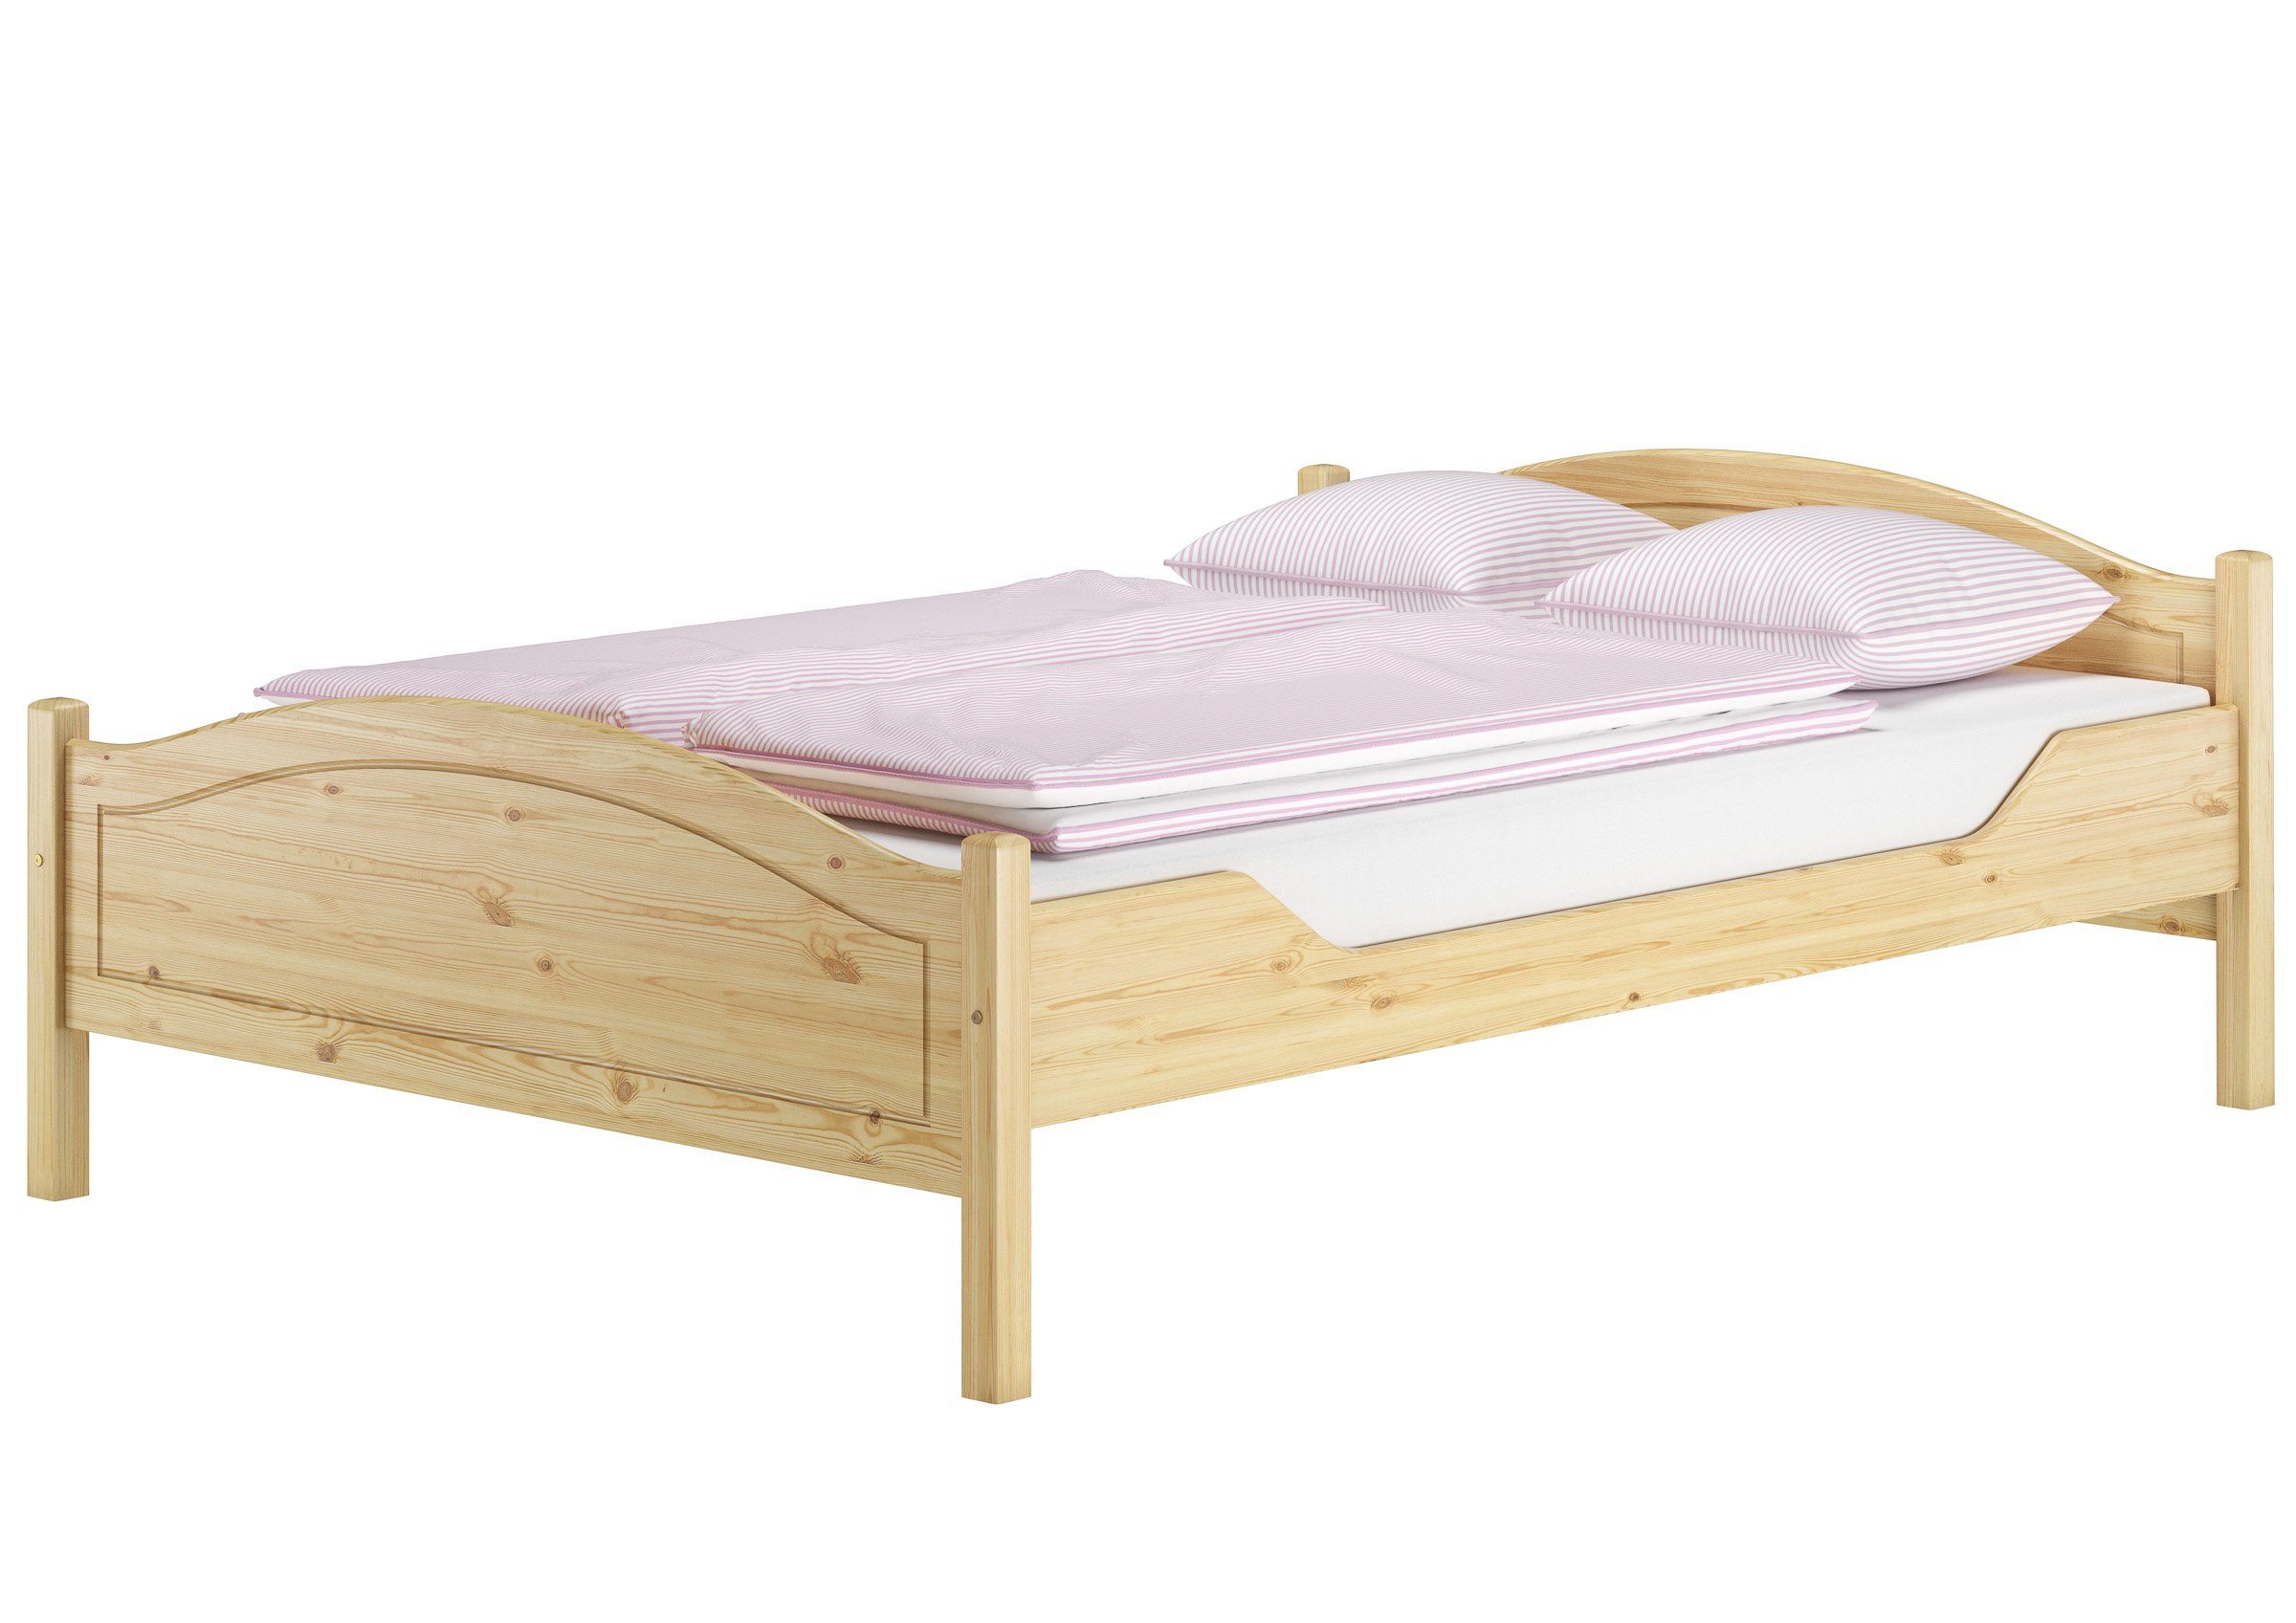 Kieferfarblos Landhausstil lackiert ERST-HOLZ Doppelbett Bett Bett massiv 140x200 wählbar, Kiefer Zubehör